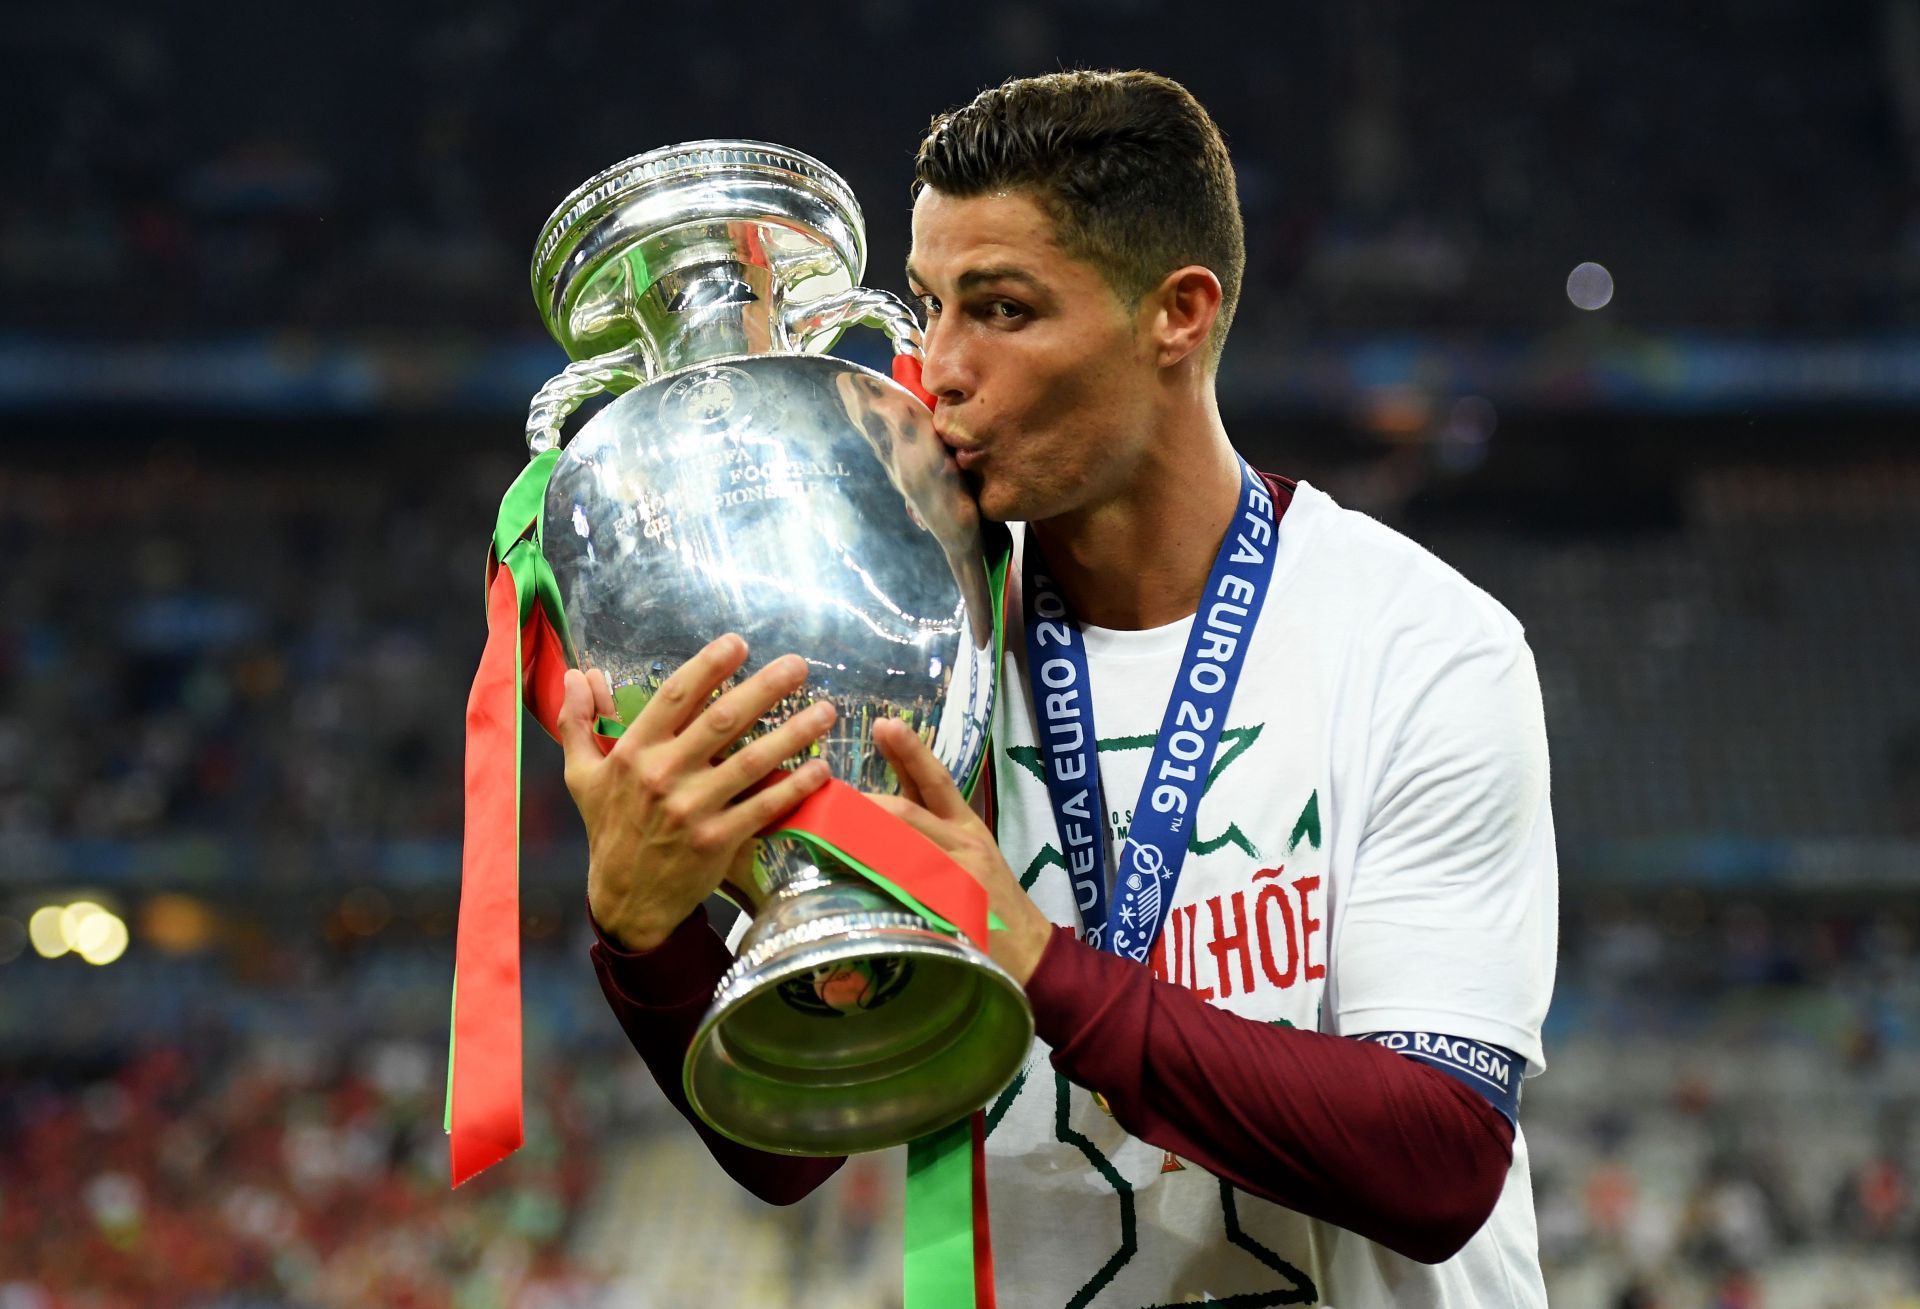 Cristiano Ronaldo was a European champion with Portugal in 2016